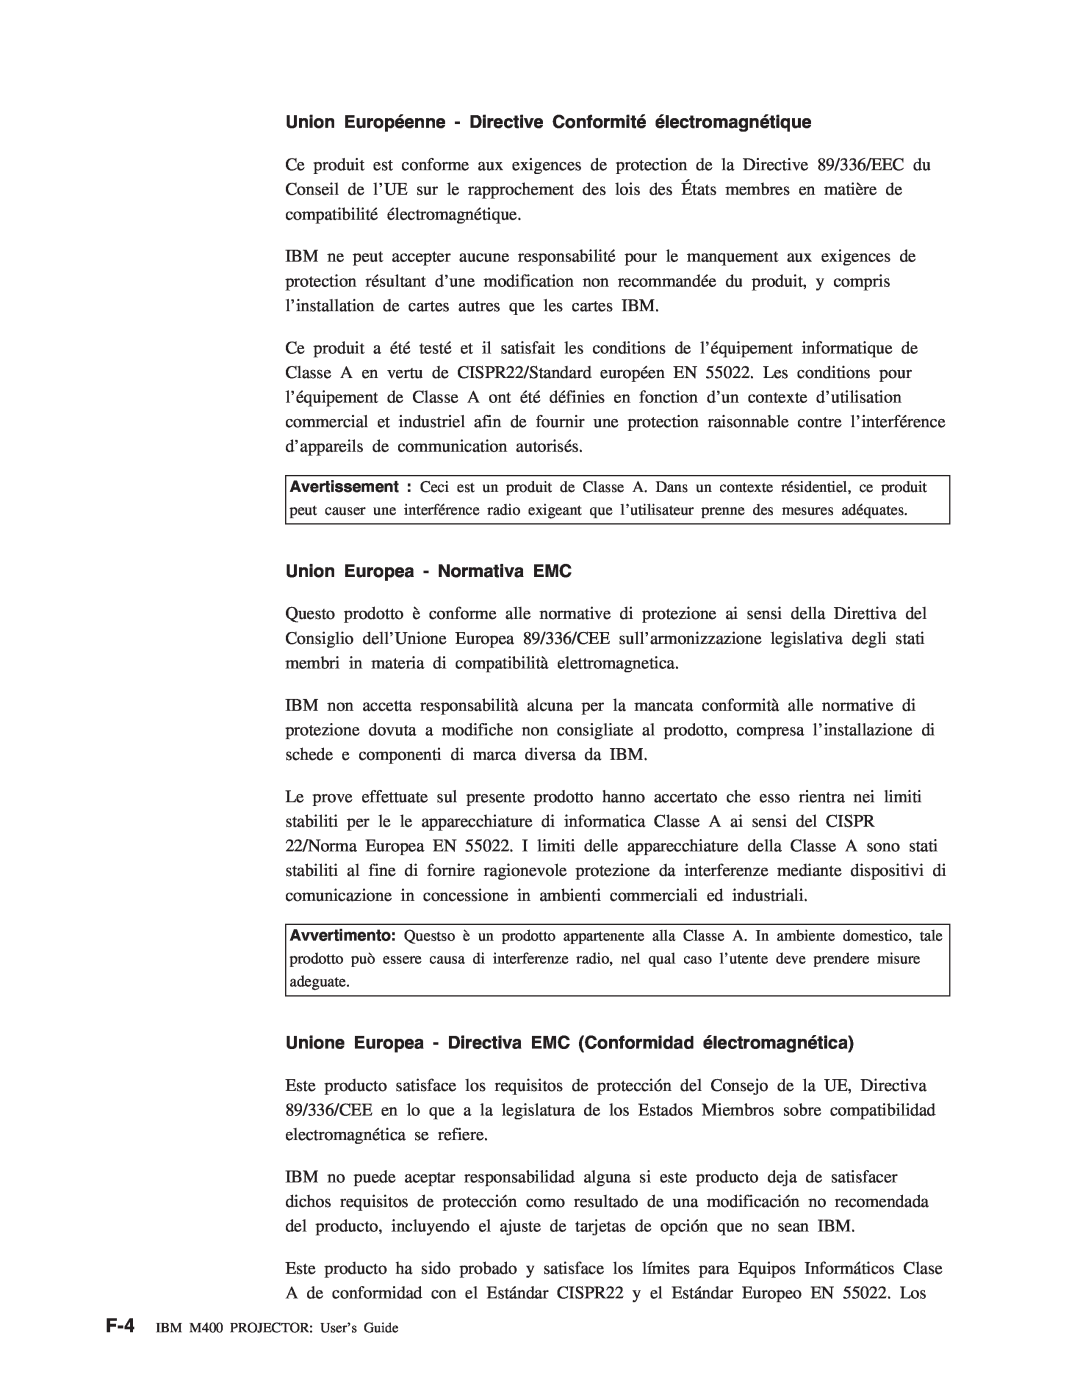 IBM M400 manual Union Européenne - Directive Conformité électromagnétique, Union Europea - Normativa EMC 